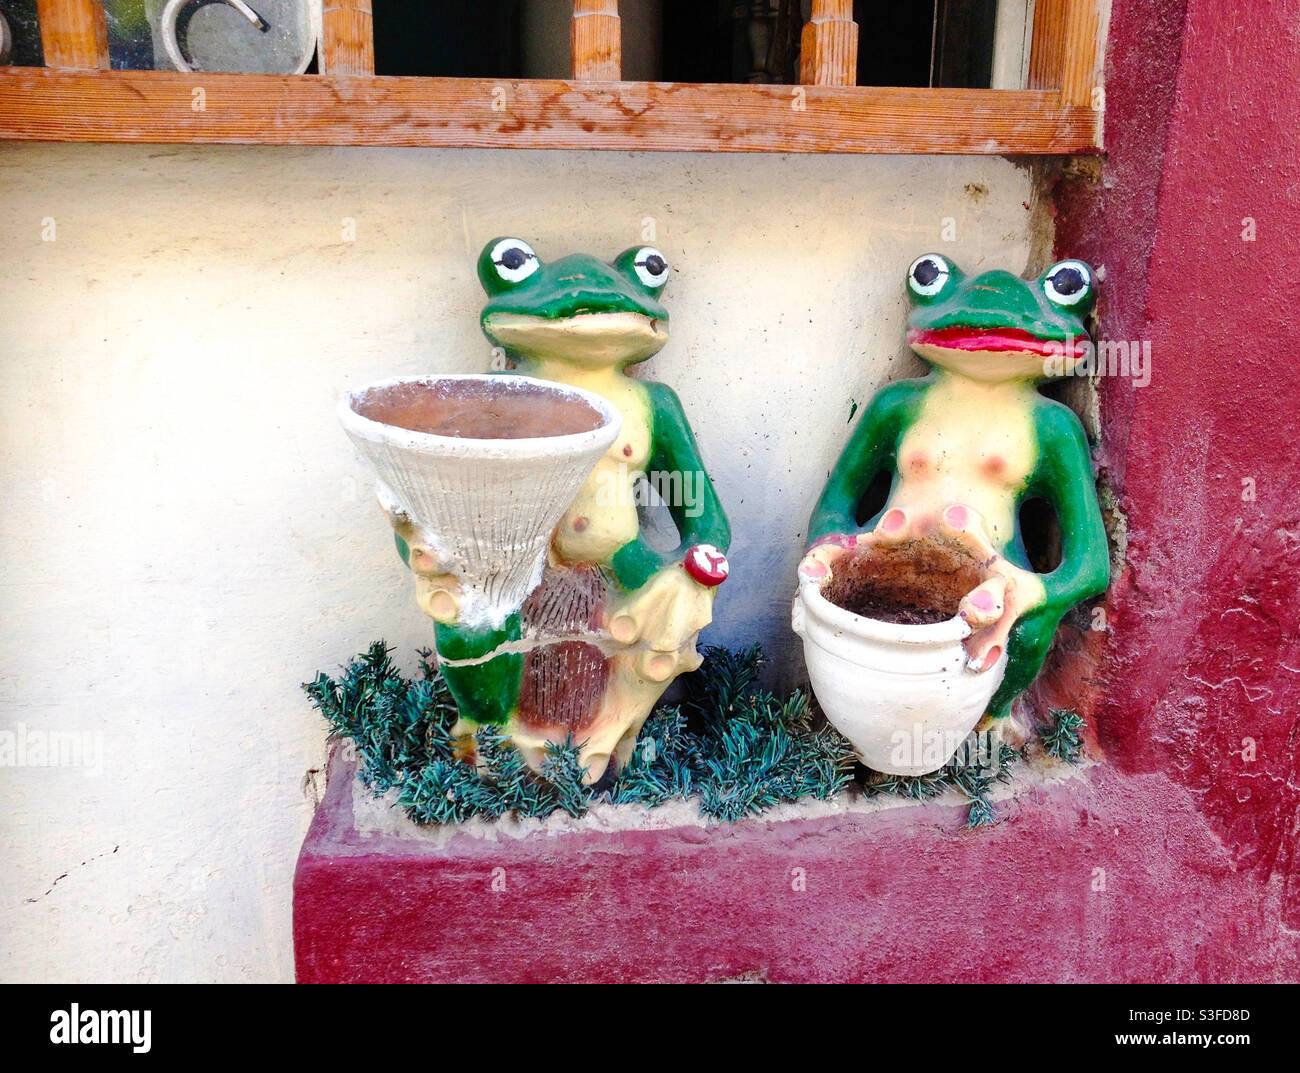 Des grenouilles originales en céramique en poterie insolites à l'extérieur d'une maison à la Havane, Cuba Banque D'Images